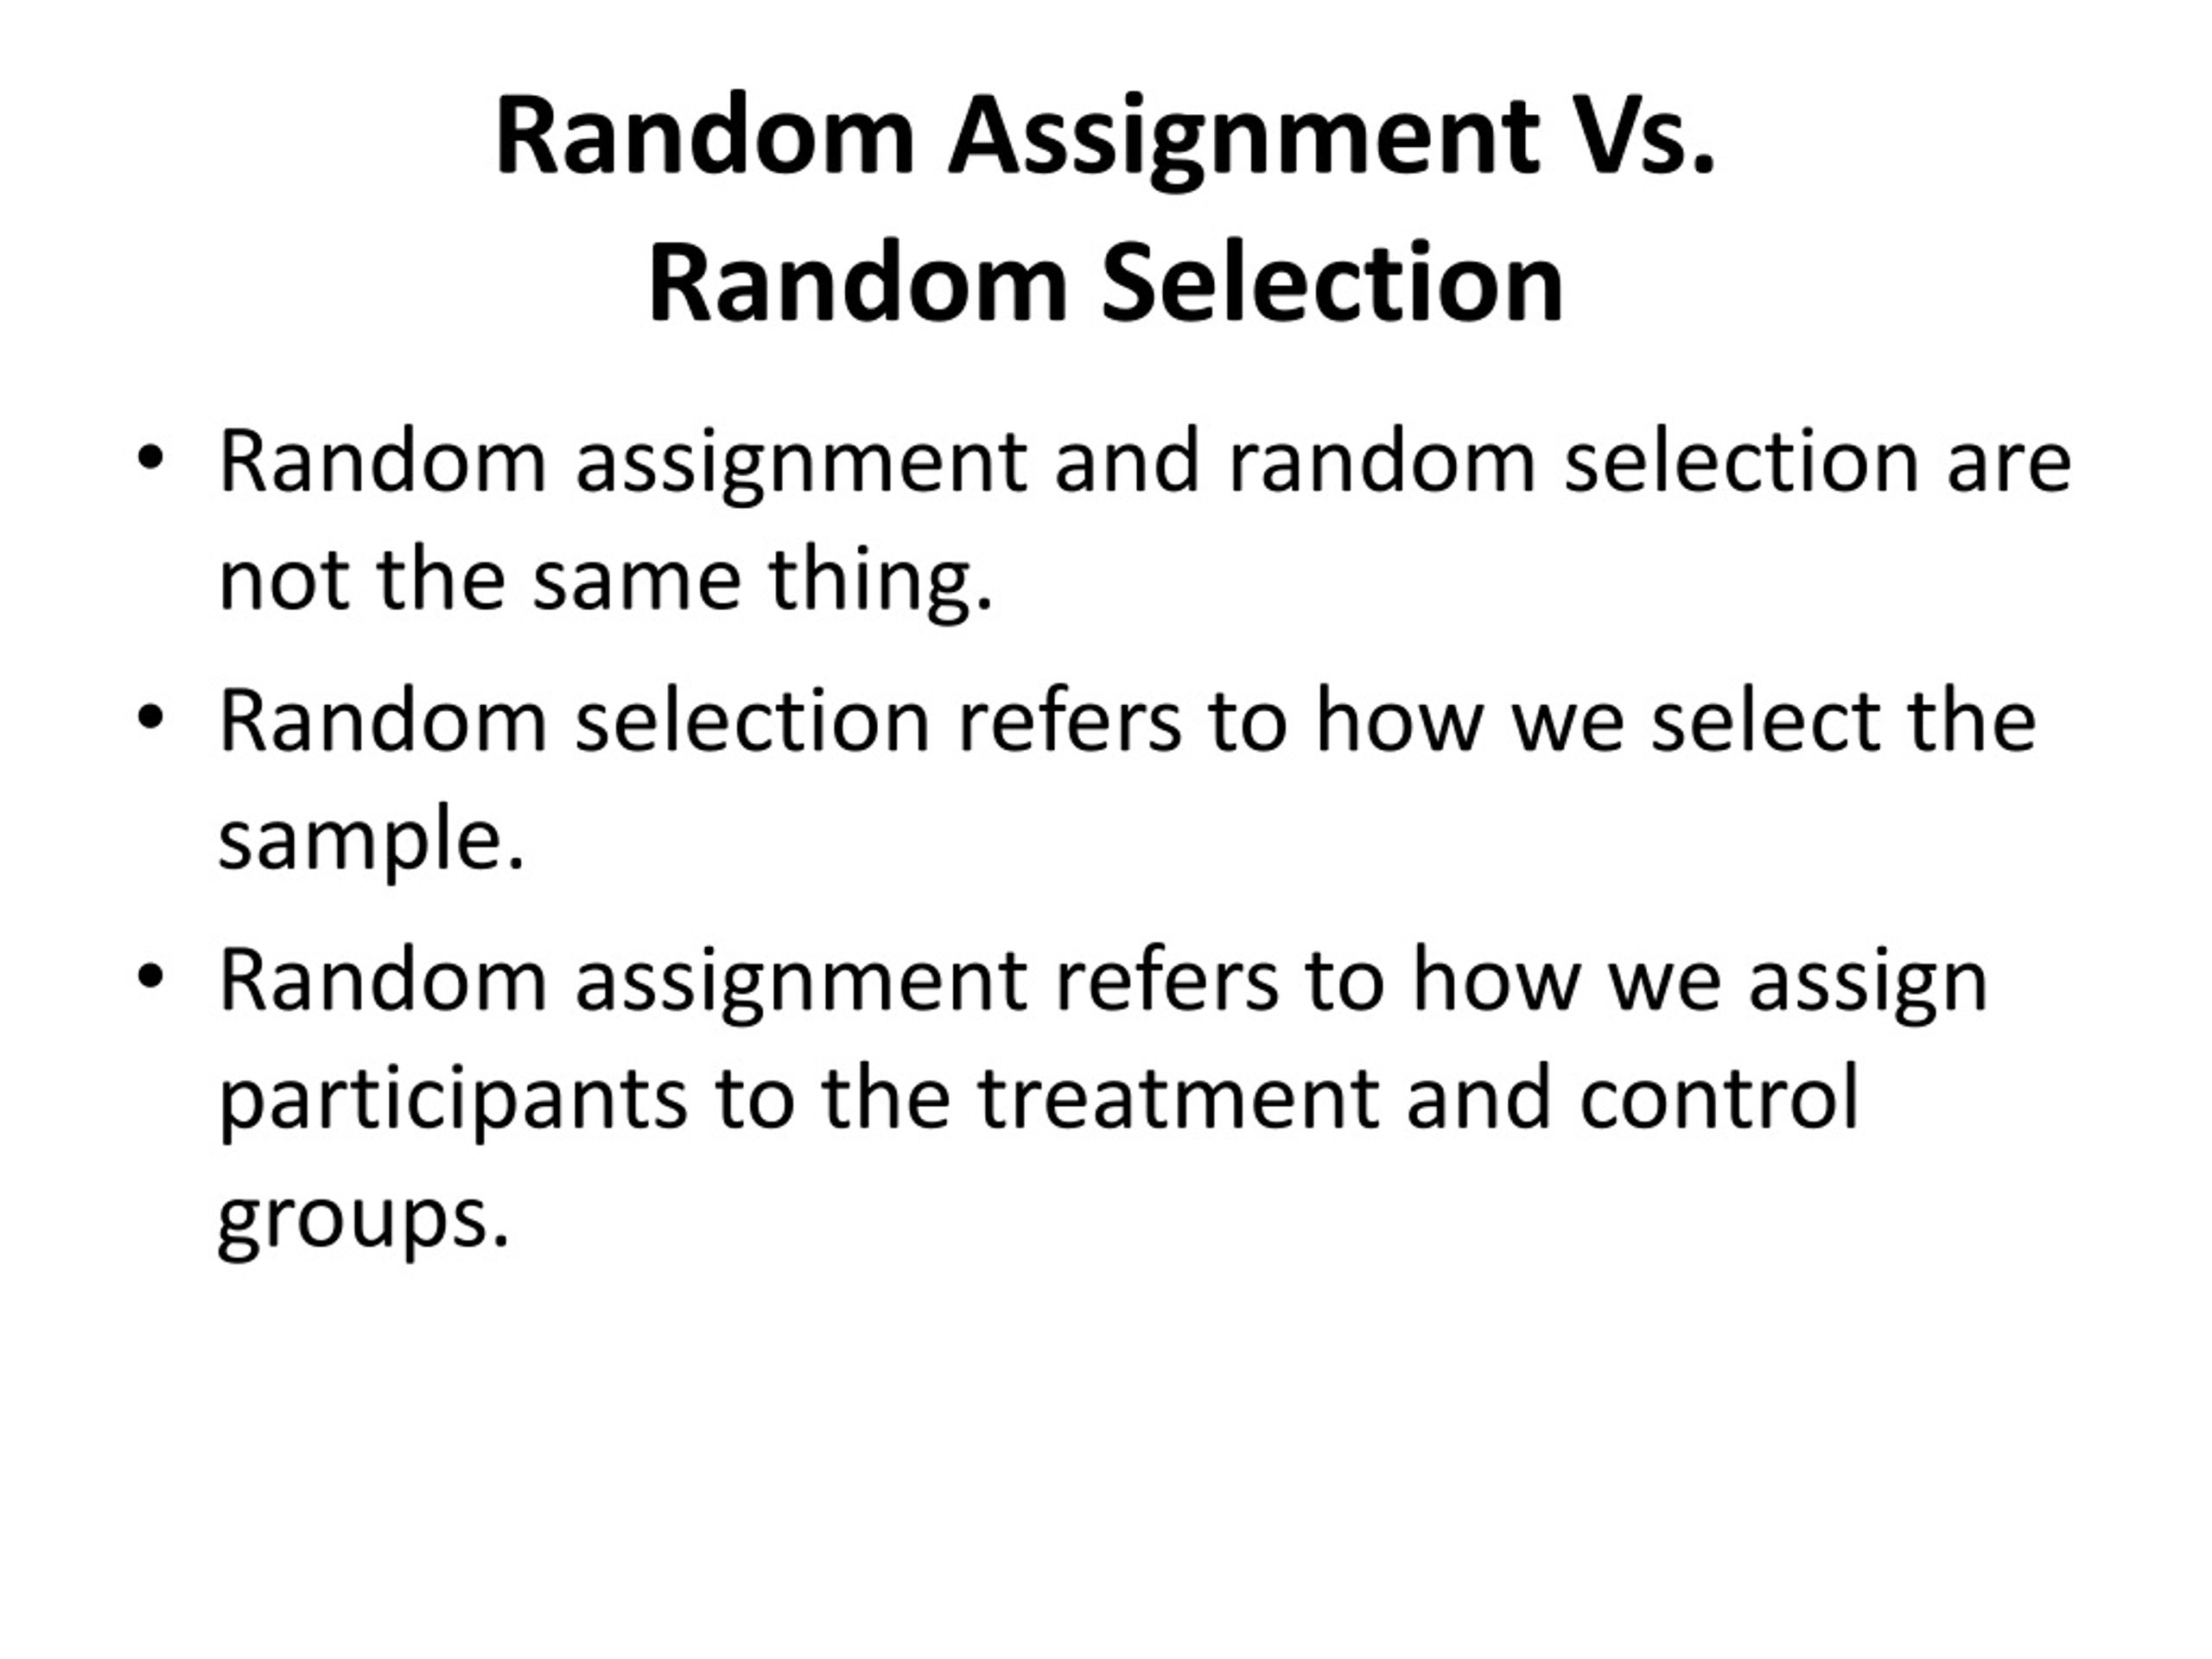 random selection or random assignment